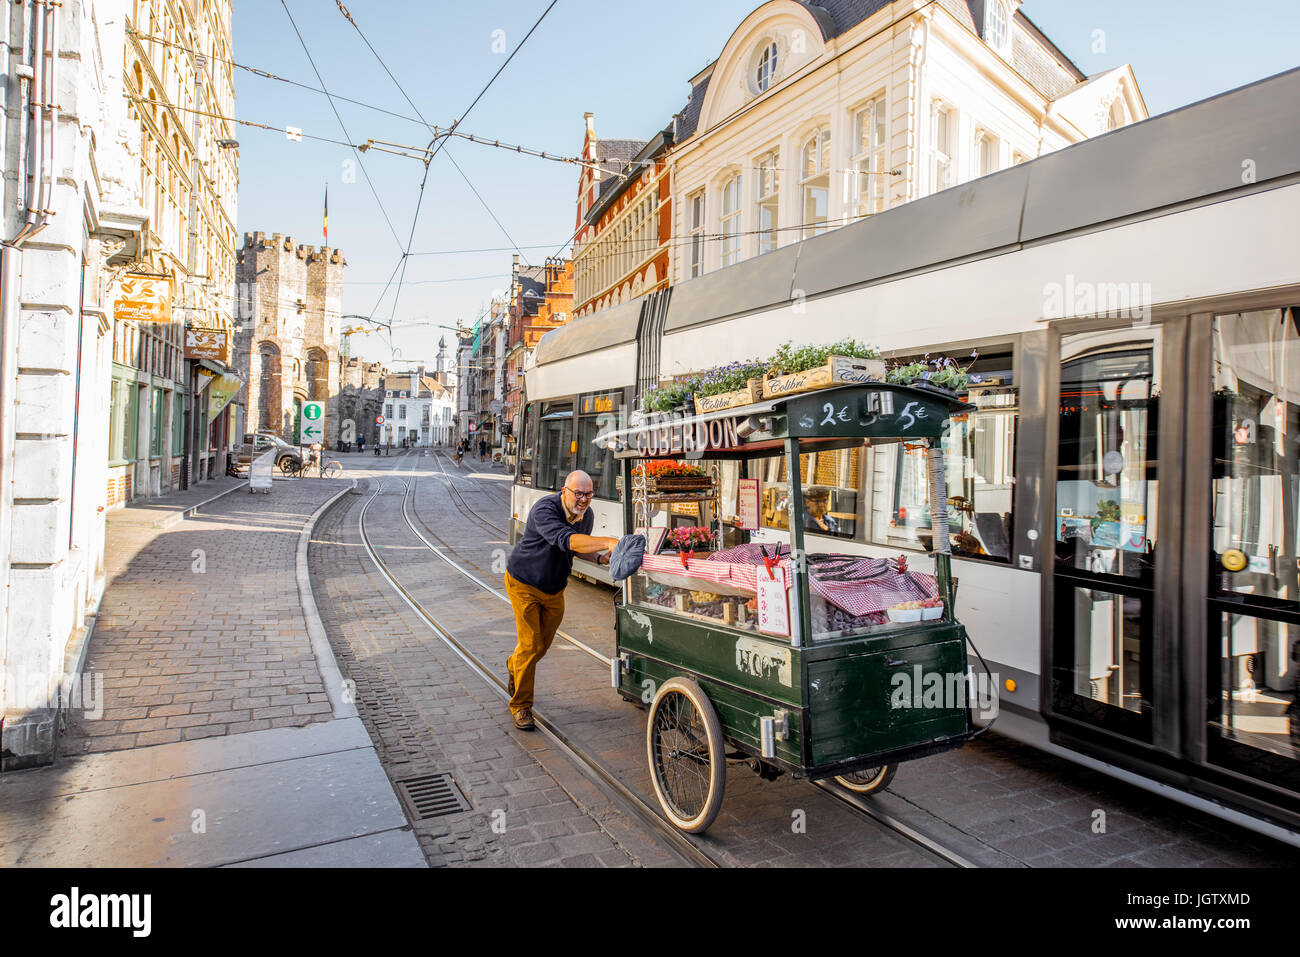 Gand, Belgique - 02 juin 2017 : monter un chariot avec bonbons cuberdons belge appelé sur la rue dans la ville de Gent, Belgique Banque D'Images